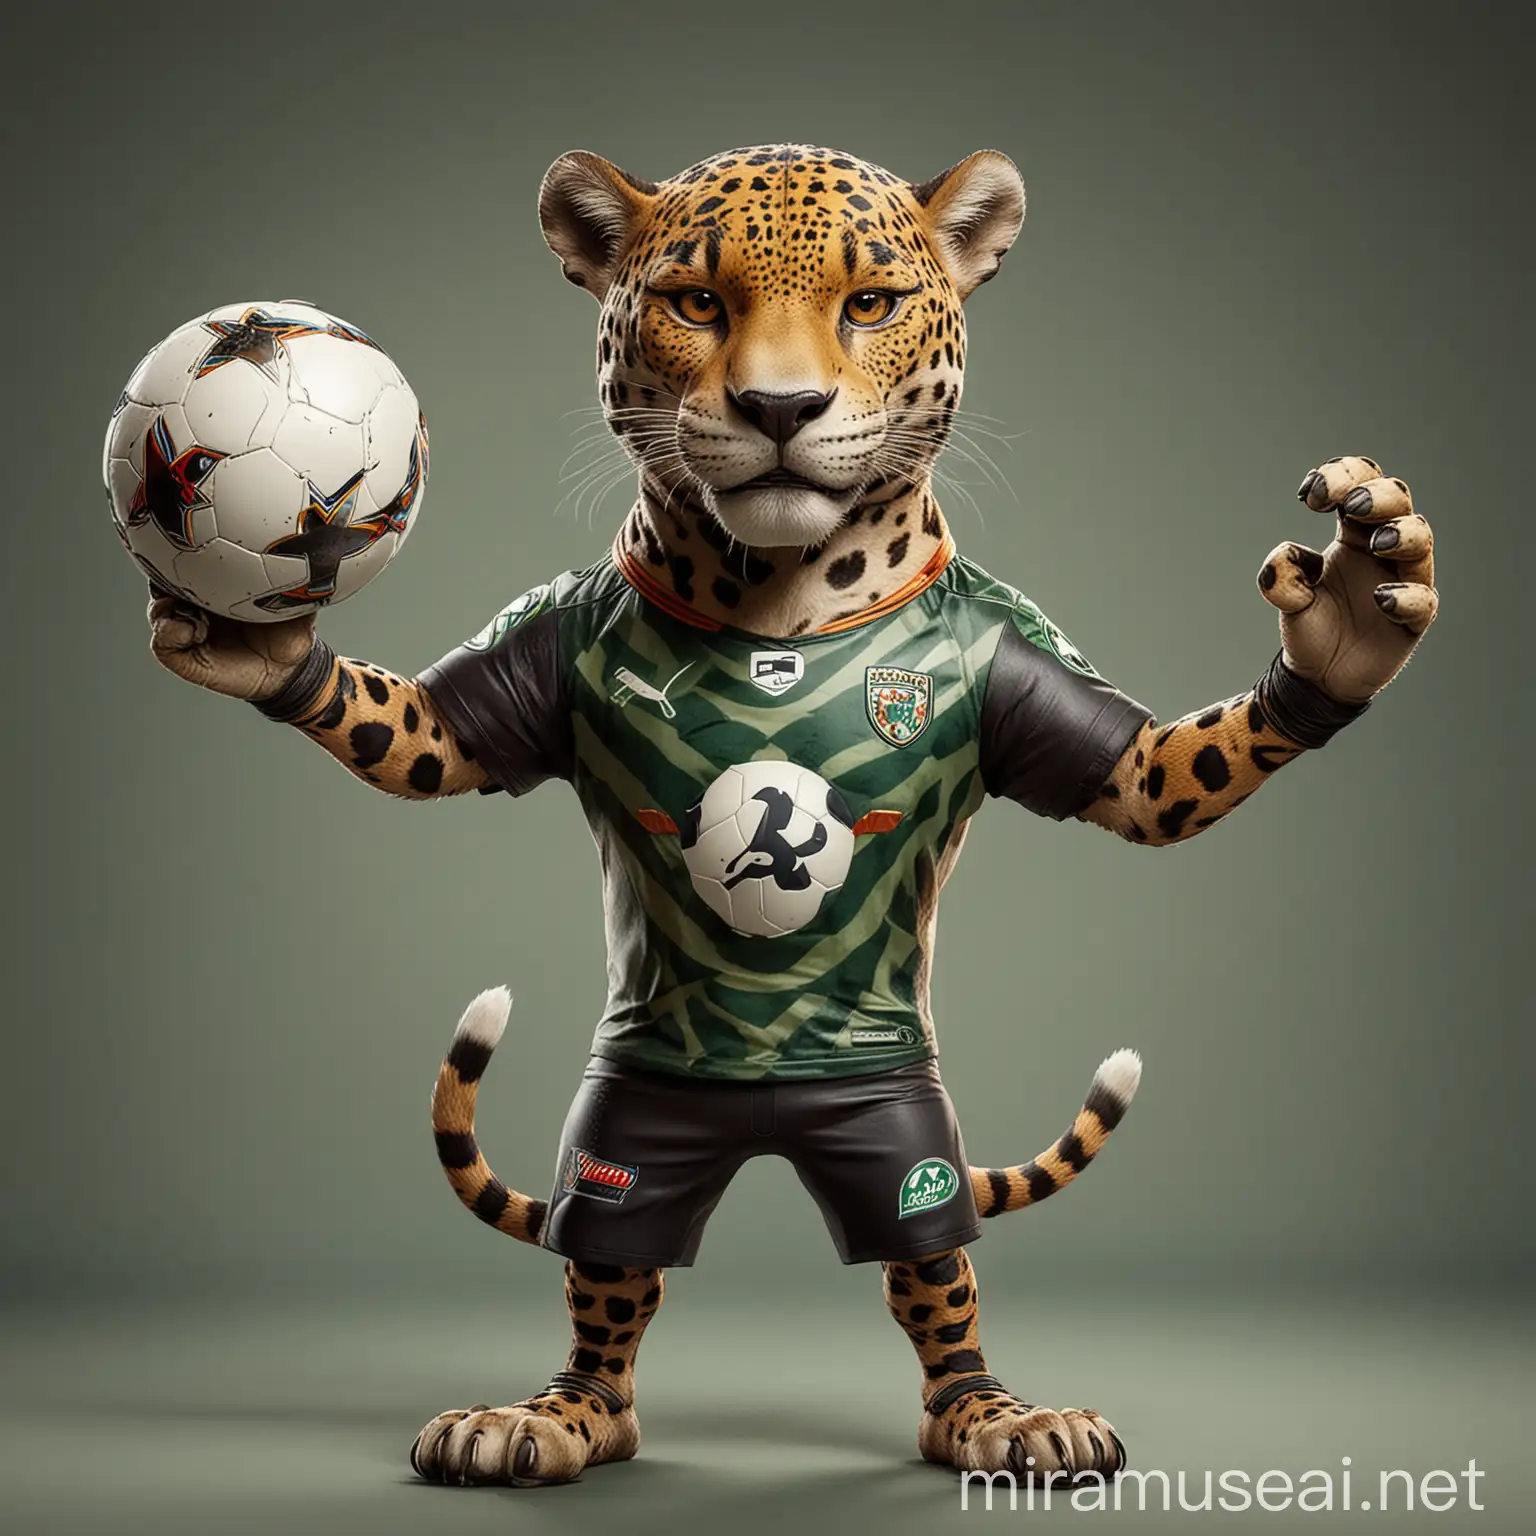 Un jaguar estilizado con aspecto amigable y enérgico, vestido con un uniforme de fútbol, sosteniendo un balón en una pata y levantando la otra en señal de victoria. El jaguar debe transmitir juego limpio, diversión y espíritu deportivo. --v 5 --q 2 --style vibrant --details realistic
